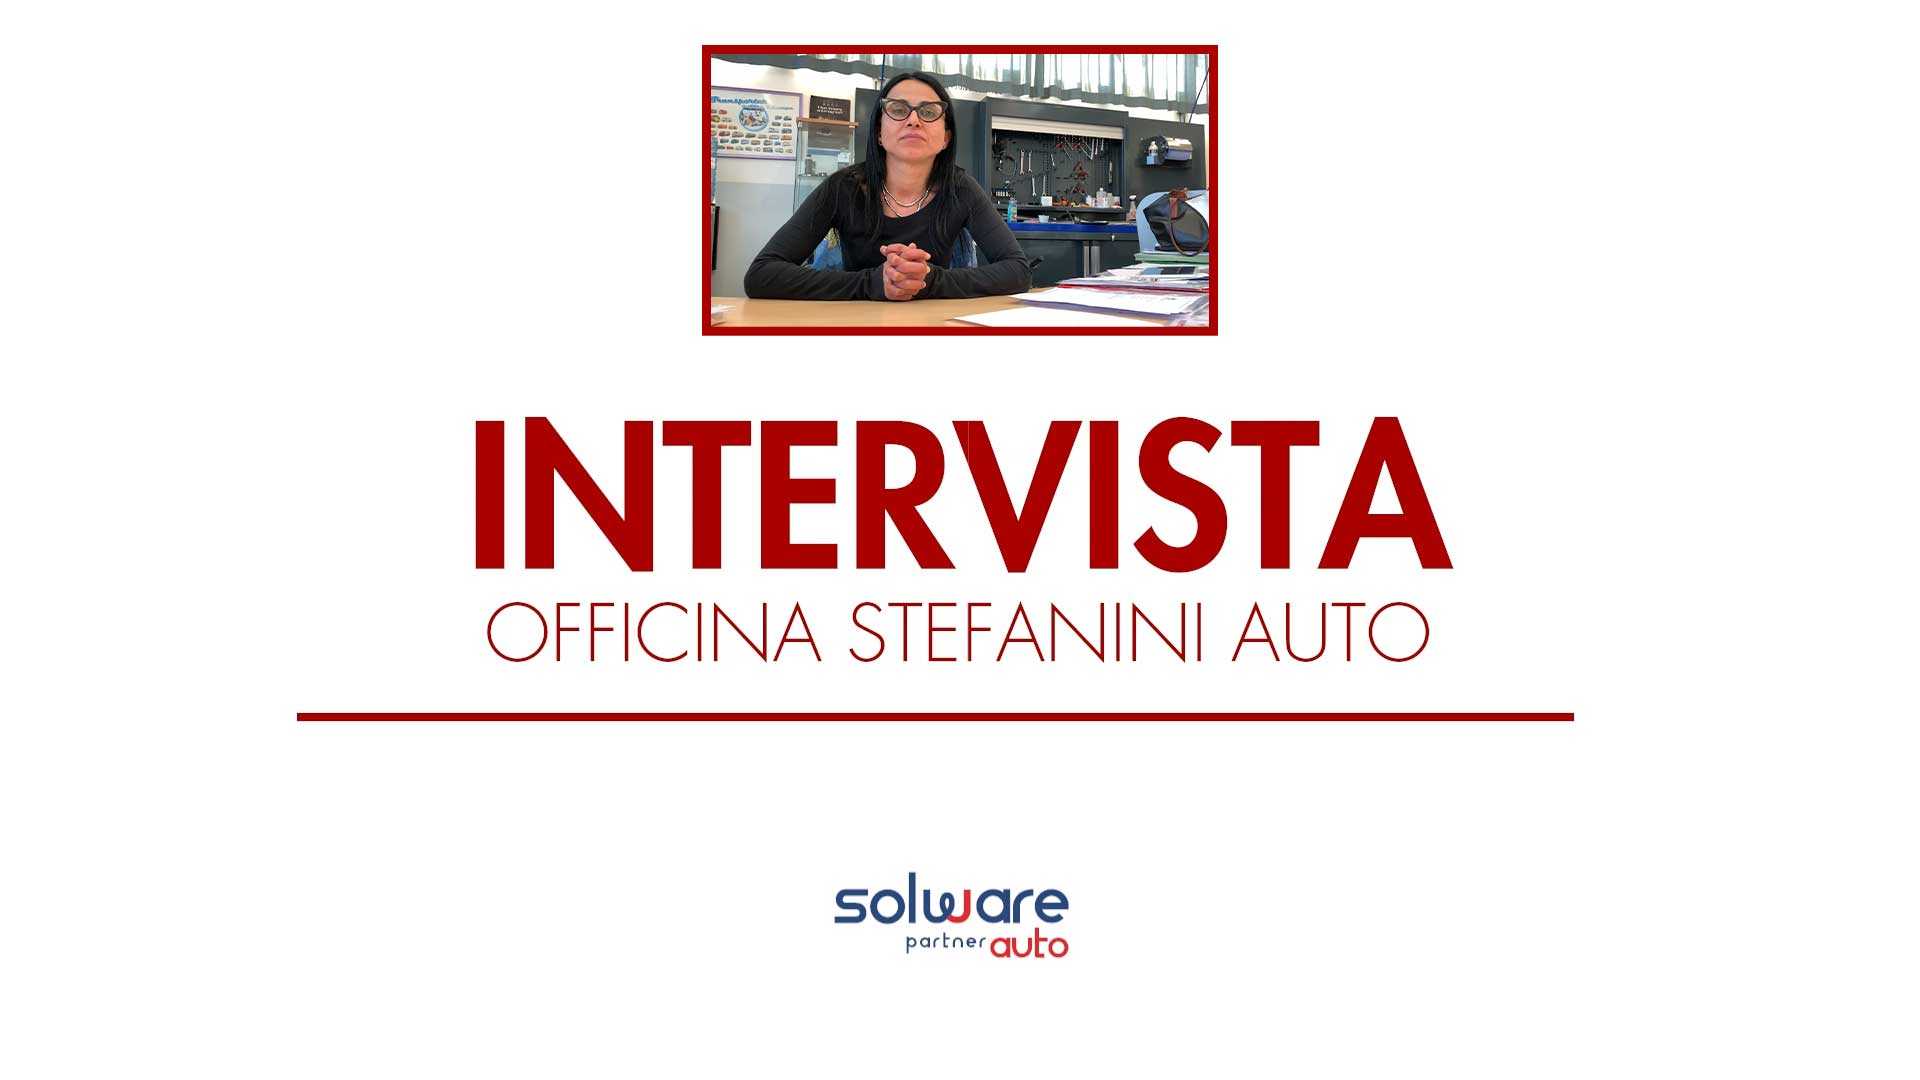 Video Testimonial dell'officina Stefanini Auto, membro della rete italiana Motrio, situata a Bologna.